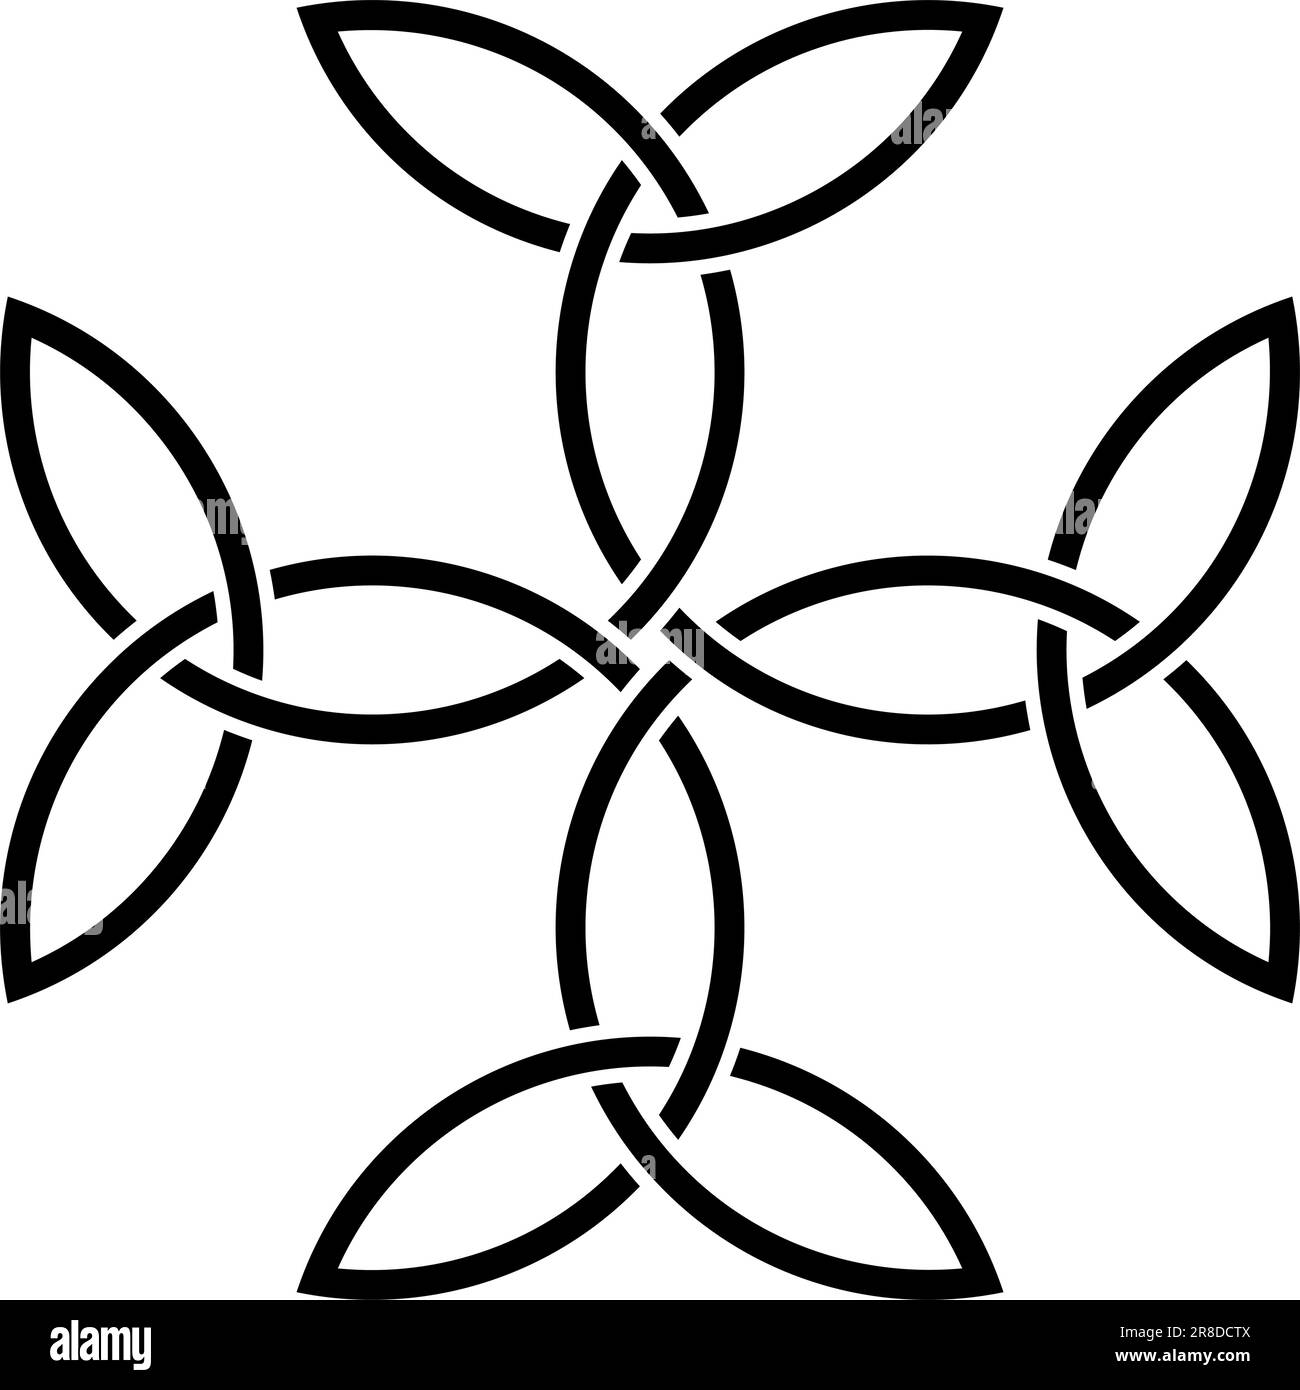 Croce carolingia in nero. Simbolo celtico. Sfondo isolato. Simboleggia l'unità, l'equilibrio e Dio. Illustrazione Vettoriale